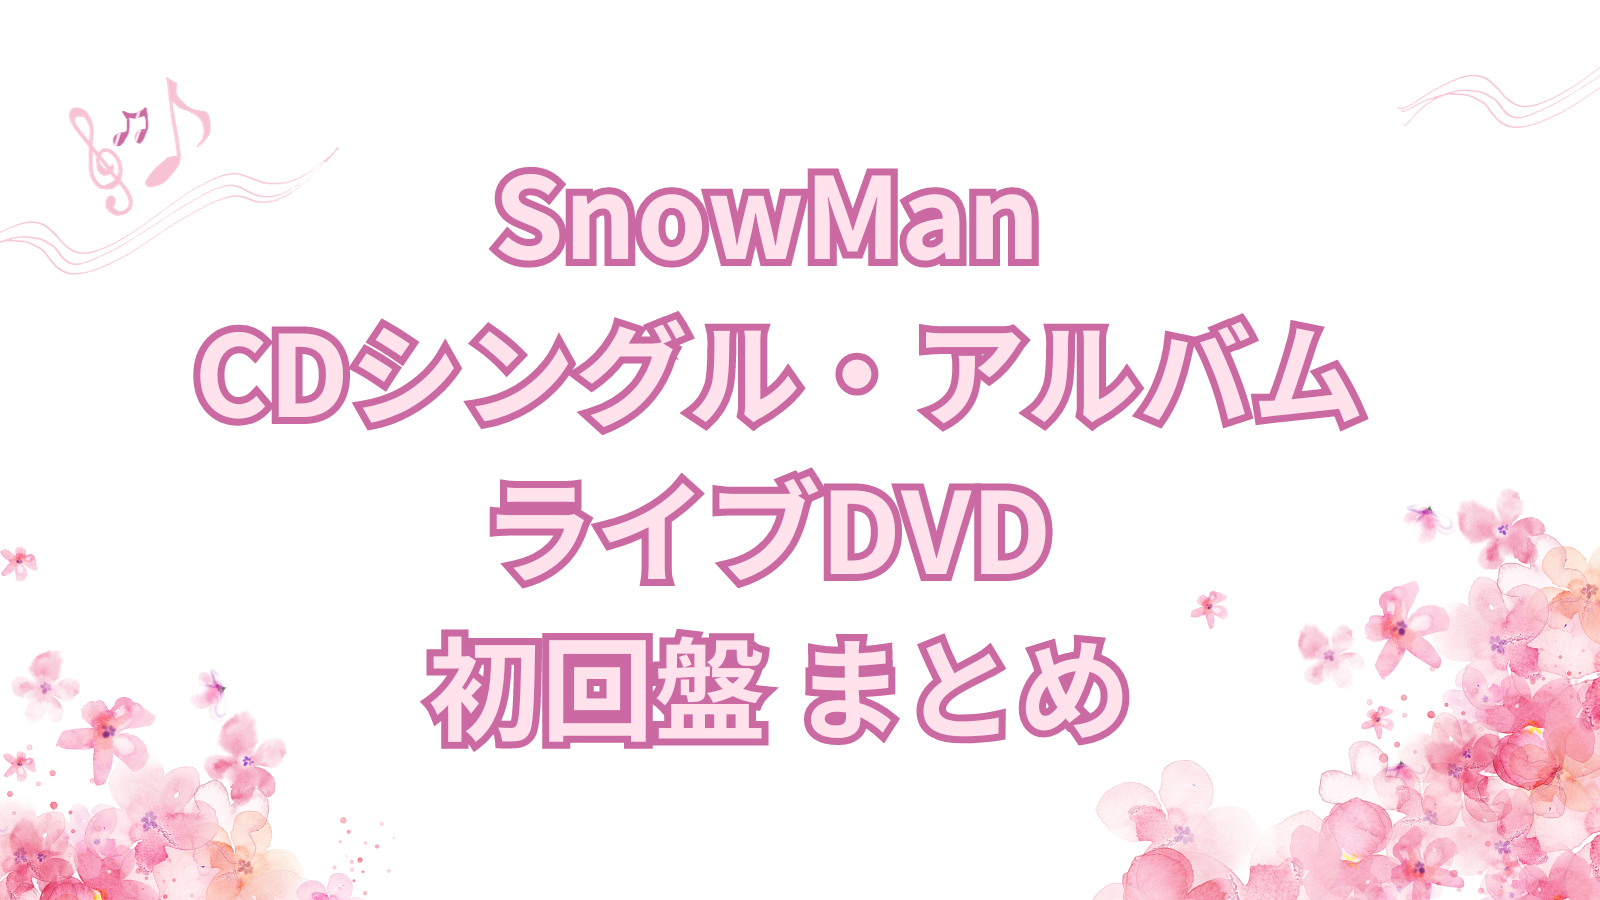 SnowMan CDシングル・アルバム・ライブDVD 初回盤 まとめ | すのサーチ